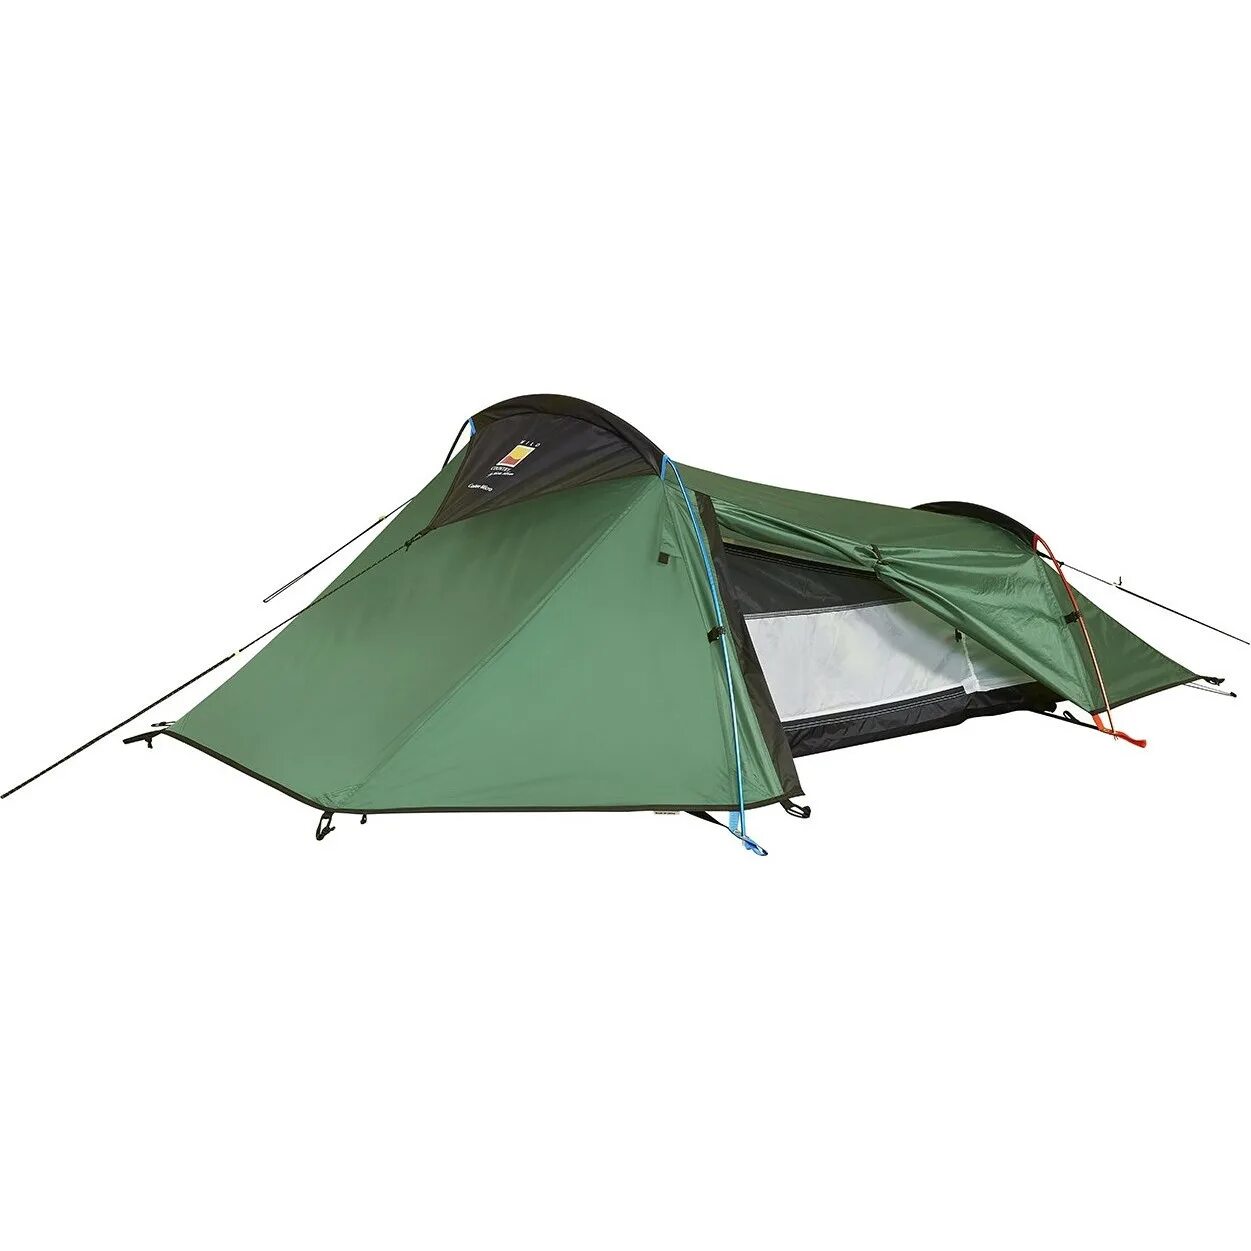 Палатка Wild Country Coshee 2. Палатка normal отшельник n 2. The Wild Camping Tent палатка. Палатка Terra Nova Jupiter Bivi.